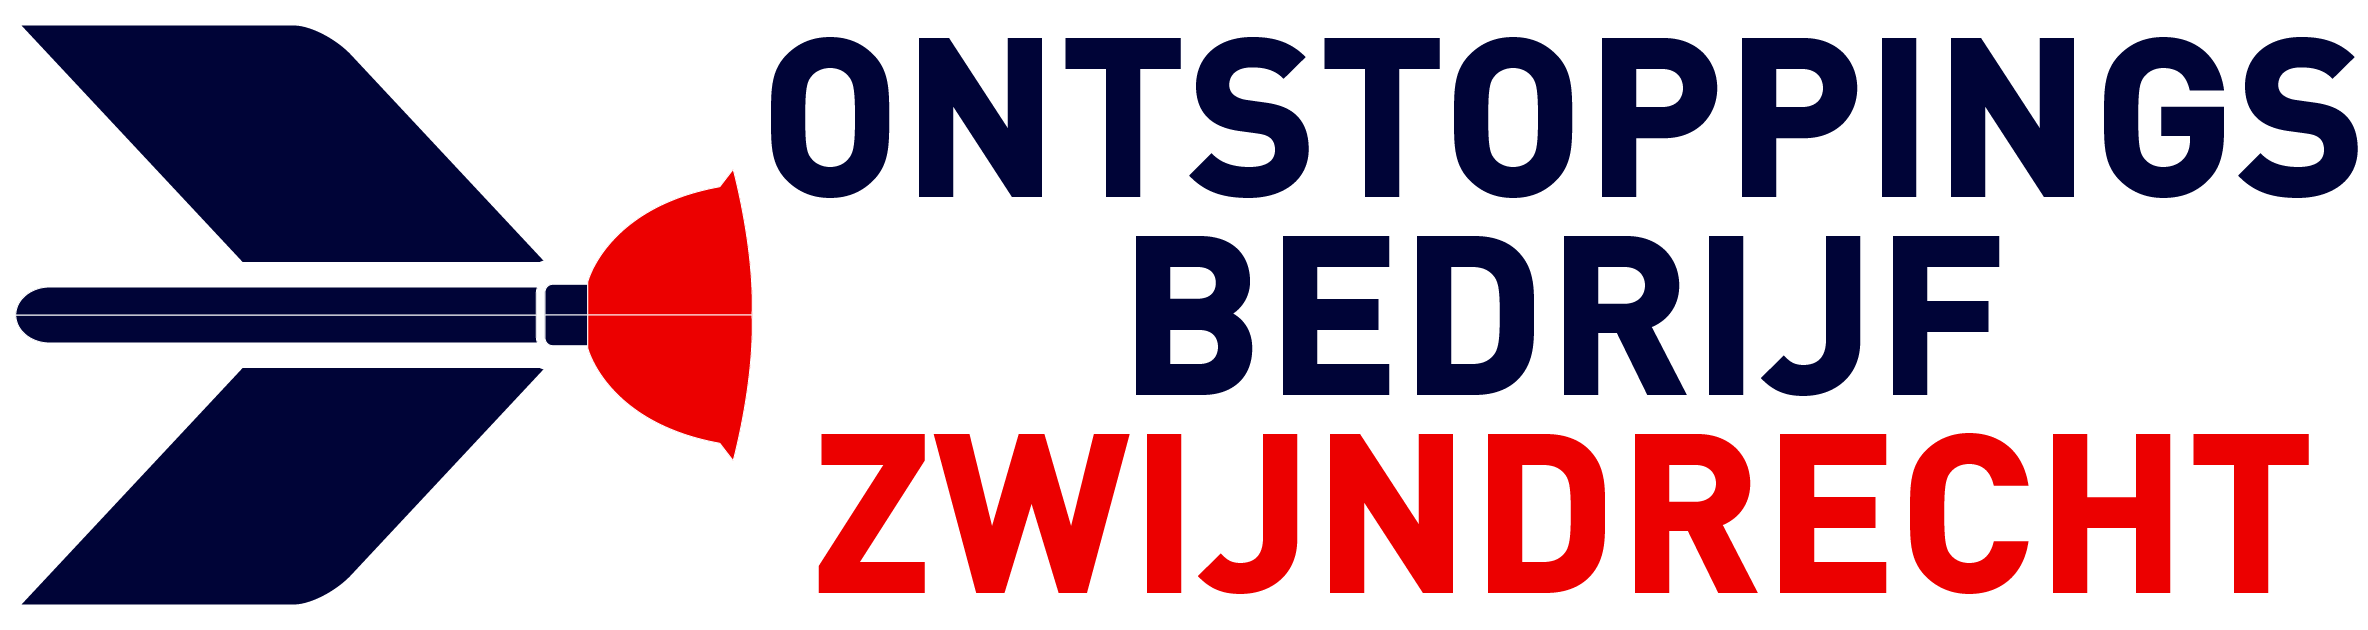 Ontstoppingsbedrijf Zwijndrecht logo